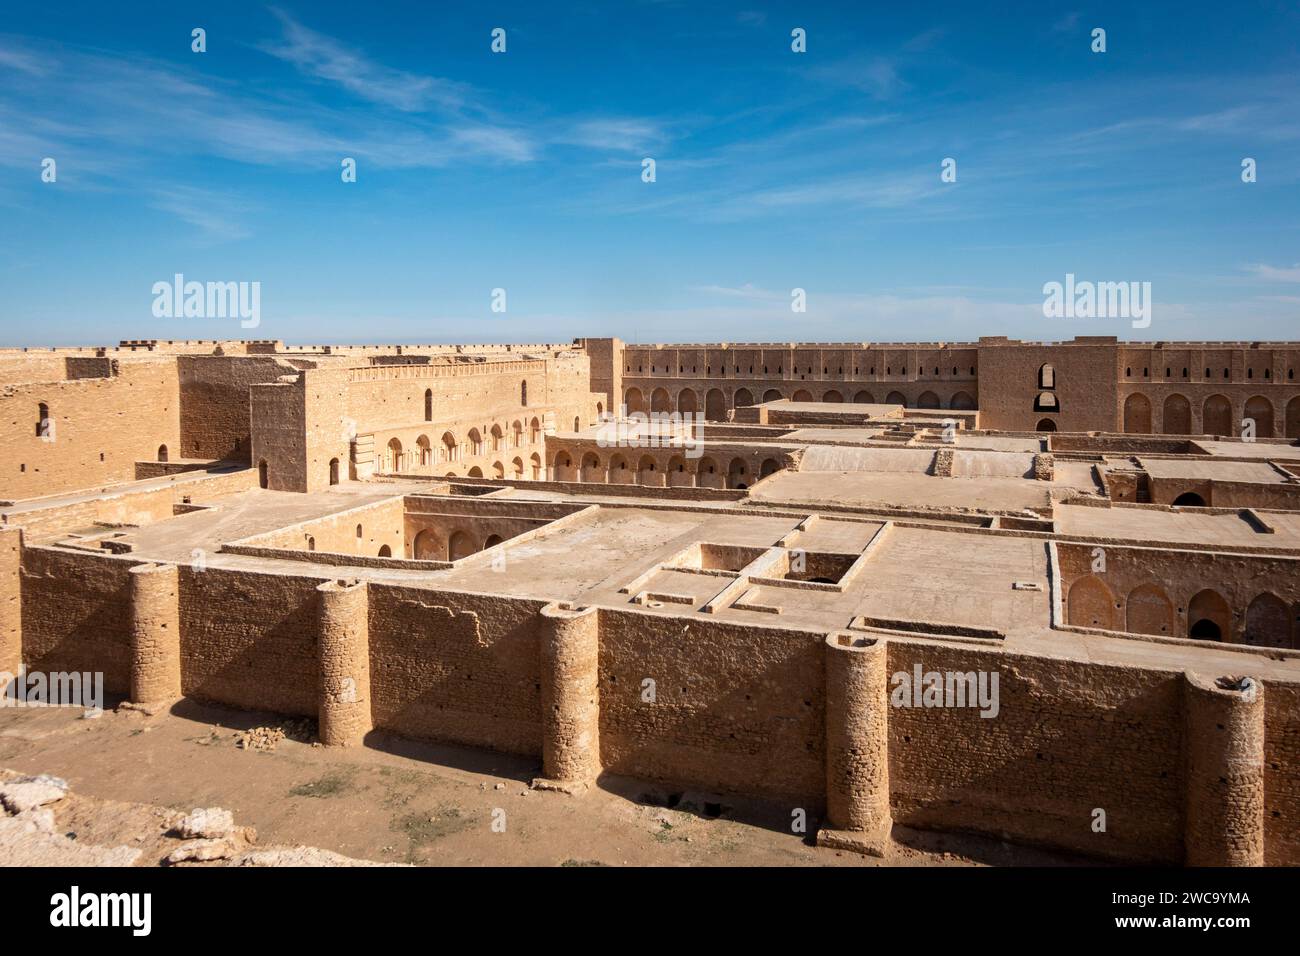 Vue de l'enceinte intérieure, la forteresse d'al-Ukhaidir ou palais abbasside d'Ukhaider, Irak Banque D'Images